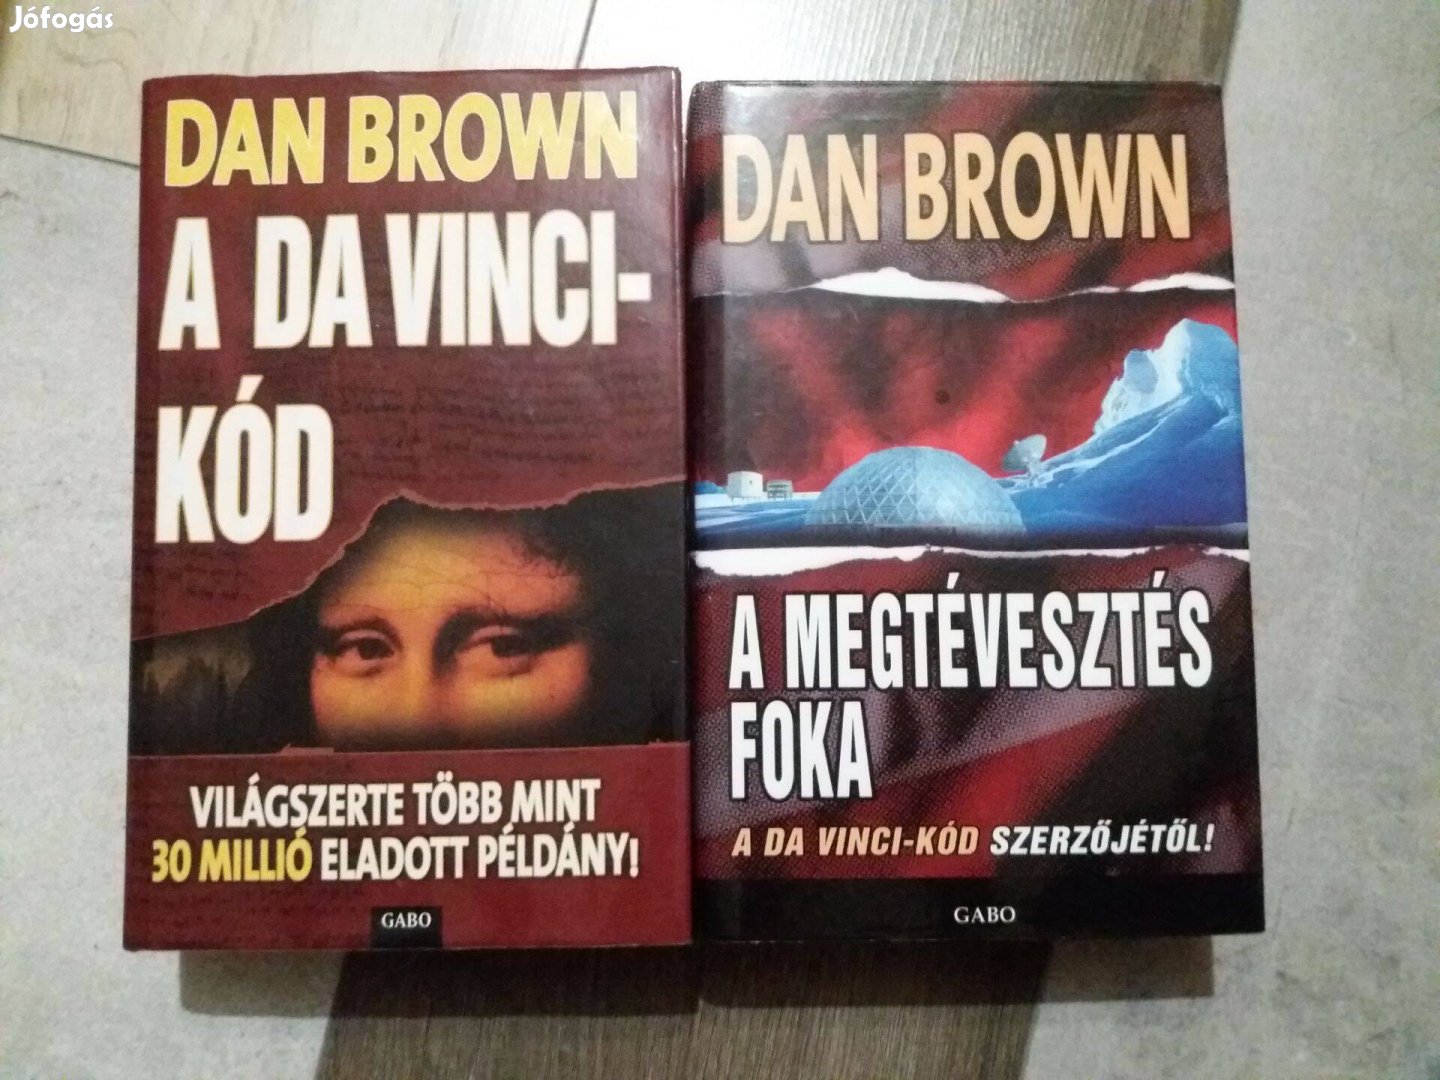 Dan Brown: A Da Vinci- kód, A megtévesztés foka